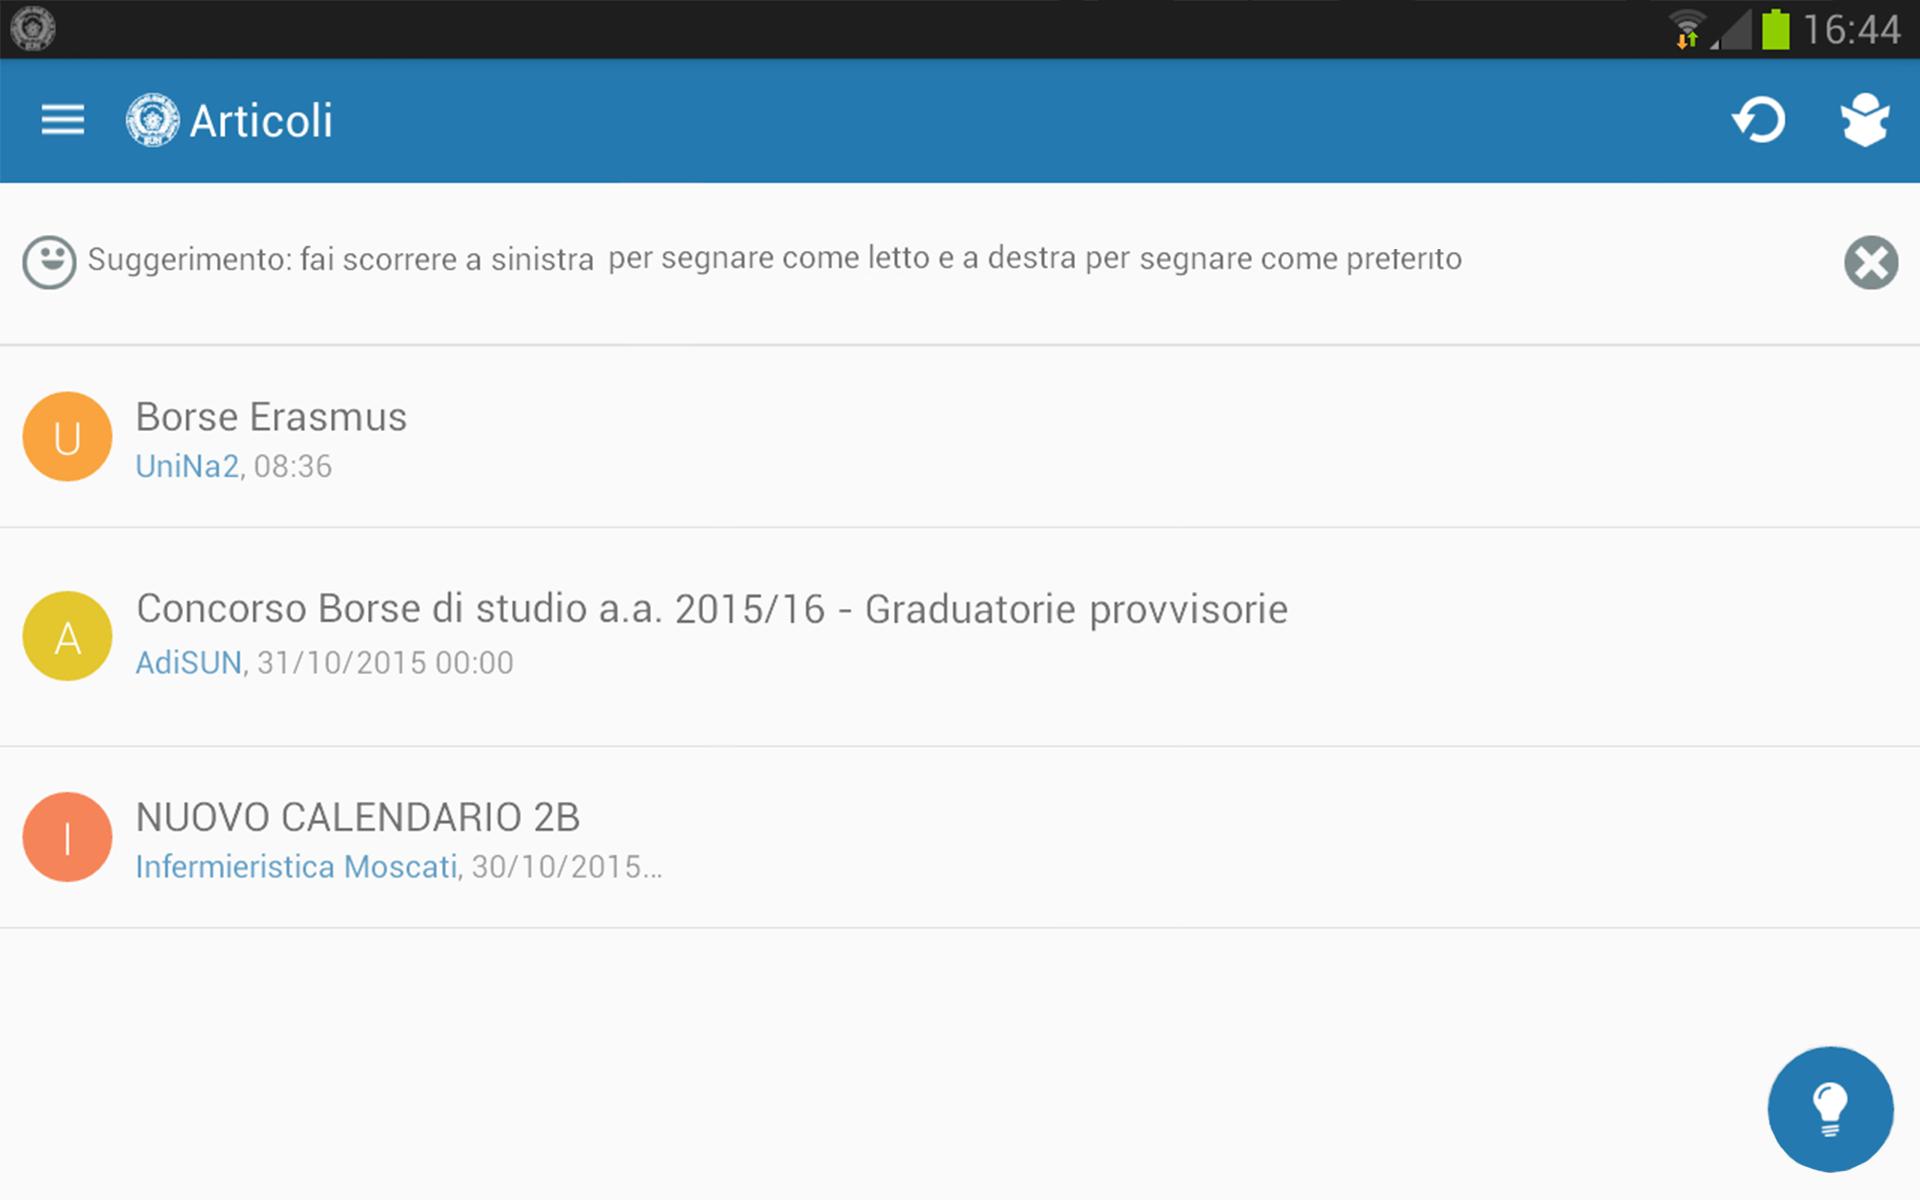 Università Vanvitelli Infermieristica Moscati for Android - APK Download